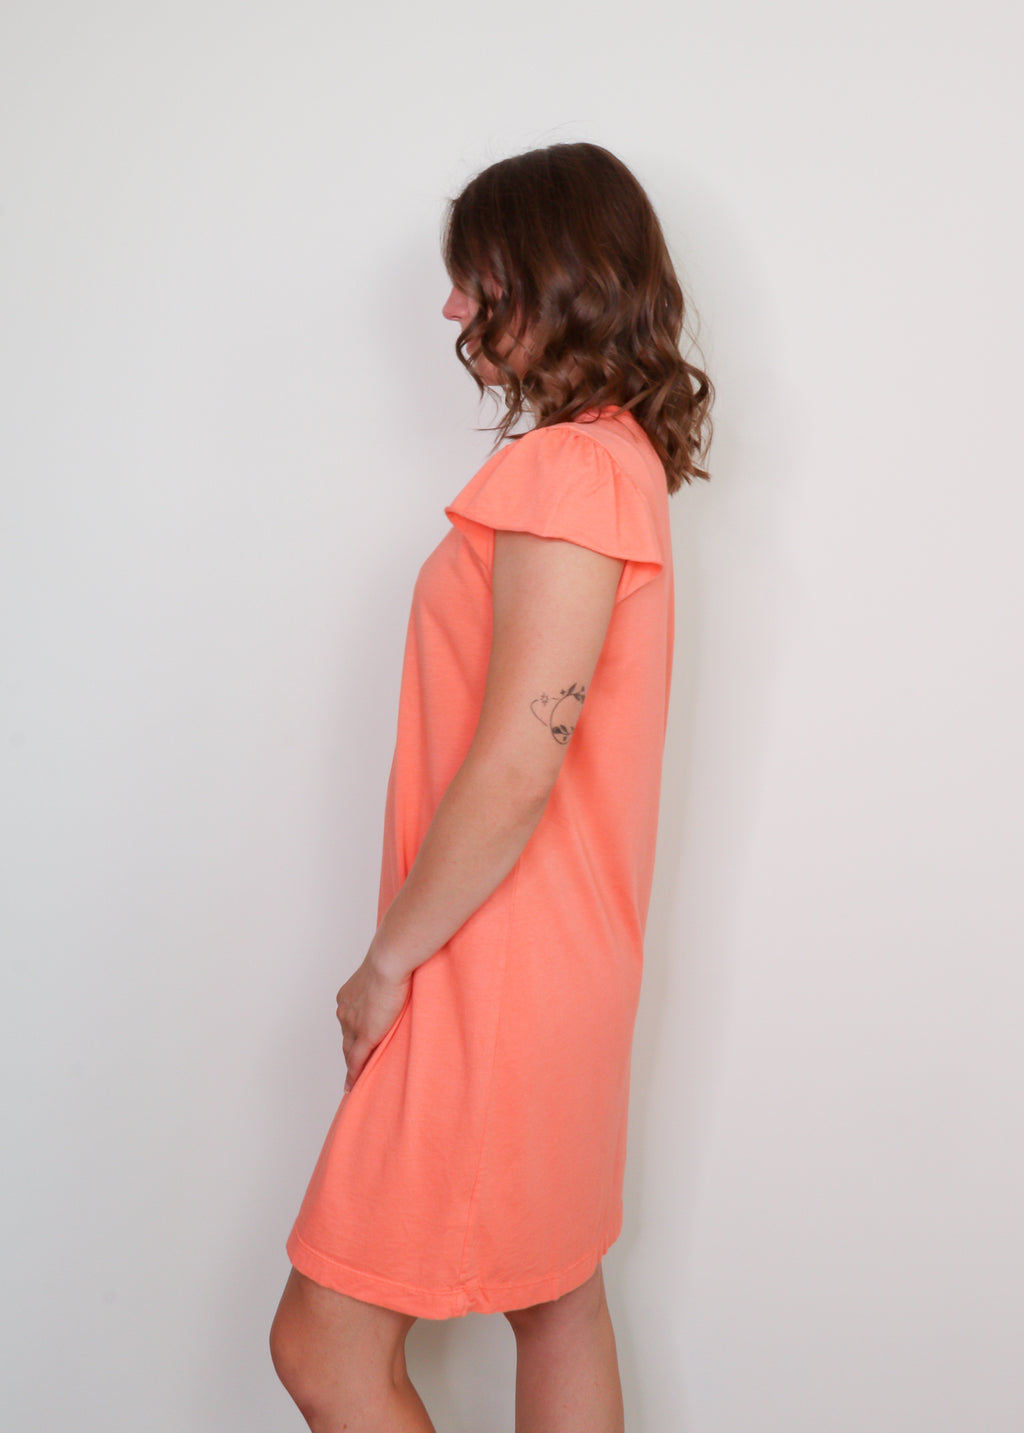 Dena Cotton Flutter Sleeve T-Shirt Dress- Peach*FINAL SALE*